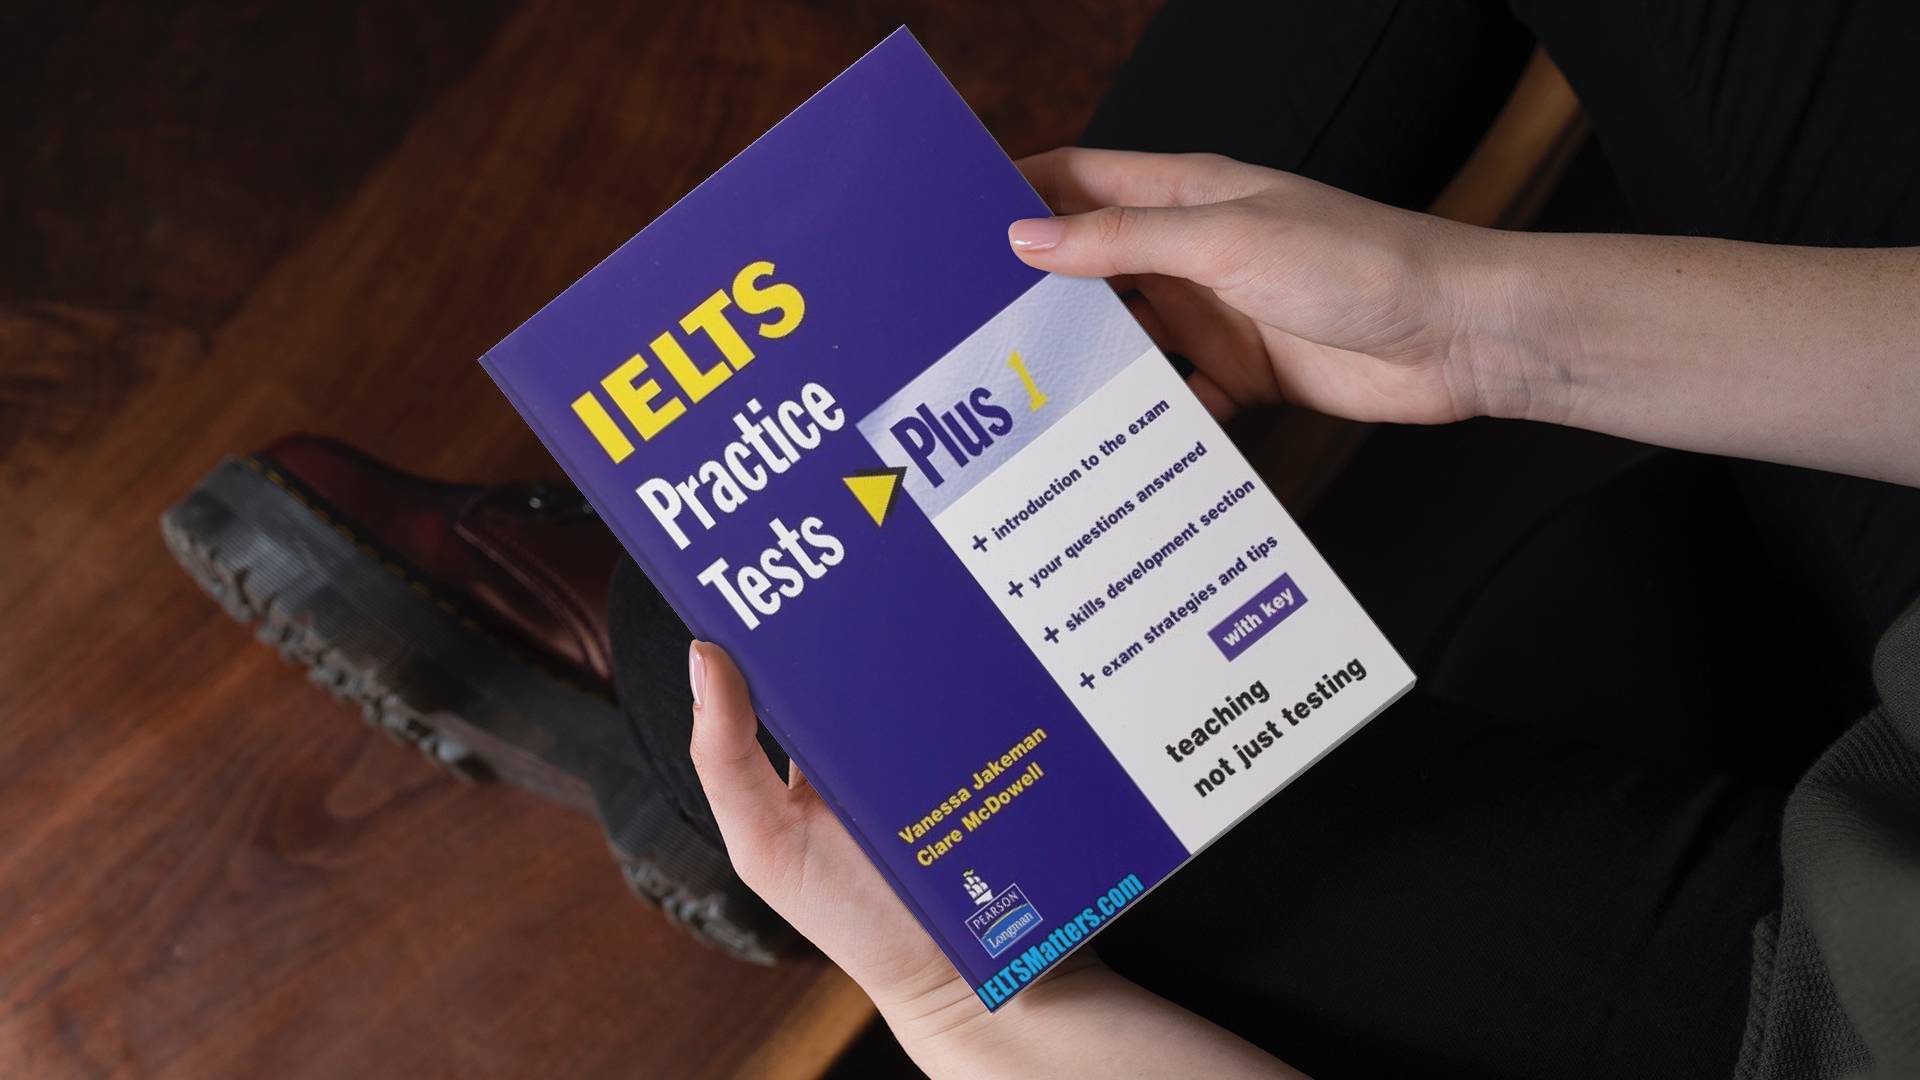 خرید کتاب زبان | کتاب زبان آیلتس | IELTS Practice Tests Plus 1 | آیلتس پرکتیس تست پلاس یک